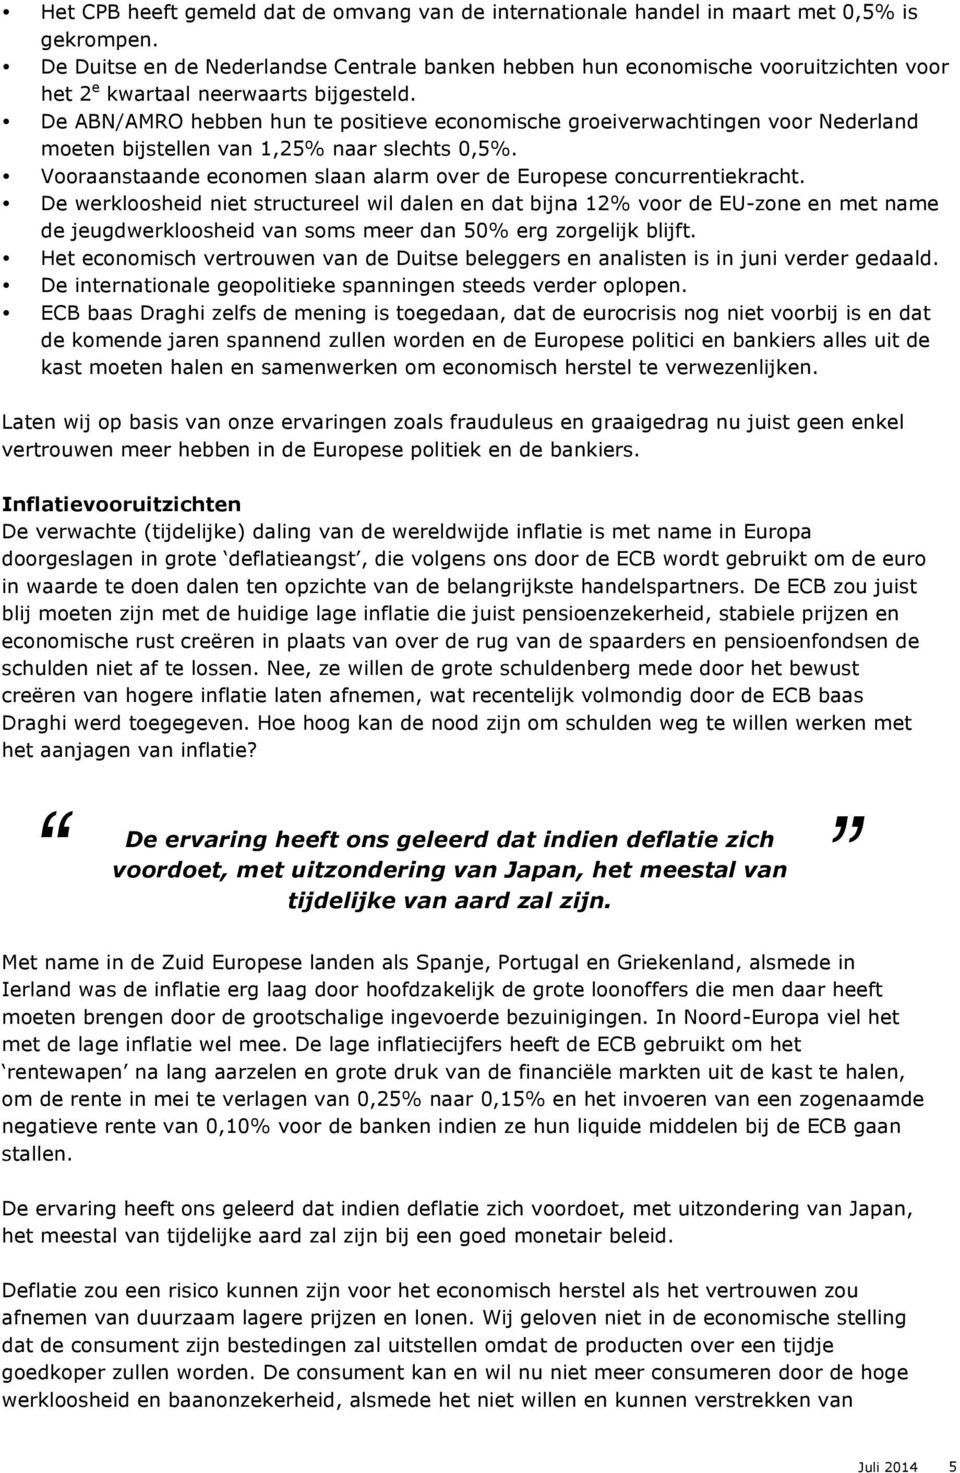 De ABN/AMRO hebben hun te positieve economische groeiverwachtingen voor Nederland moeten bijstellen van 1,25% naar slechts 0,5%.